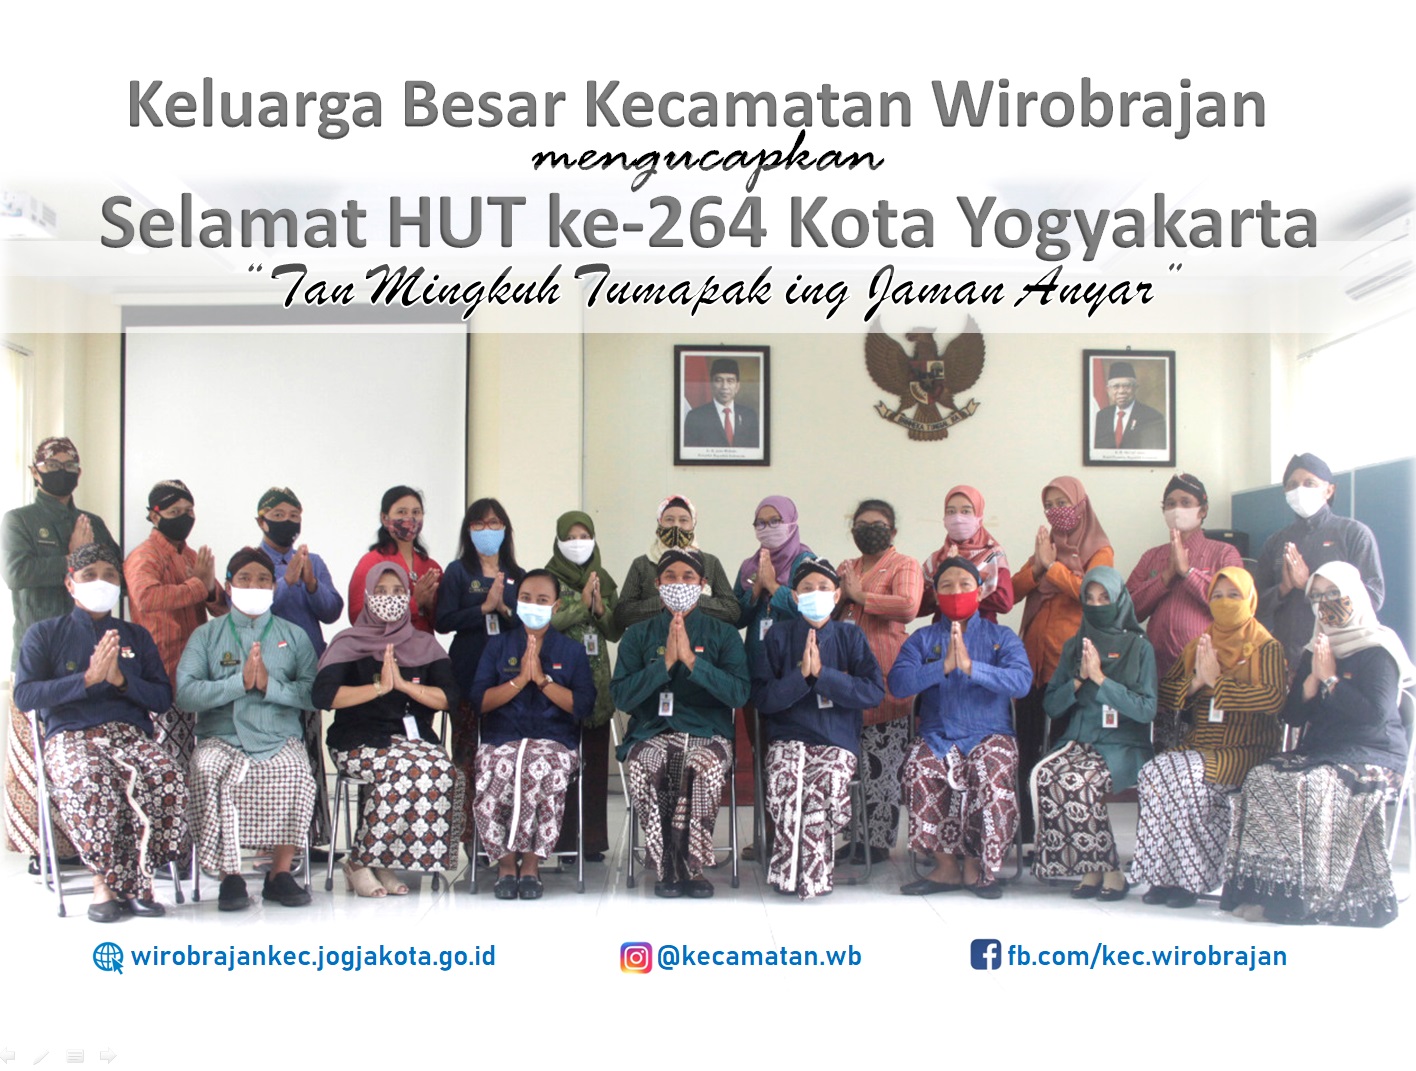 HUT ke-264 Kota Yogyakarta